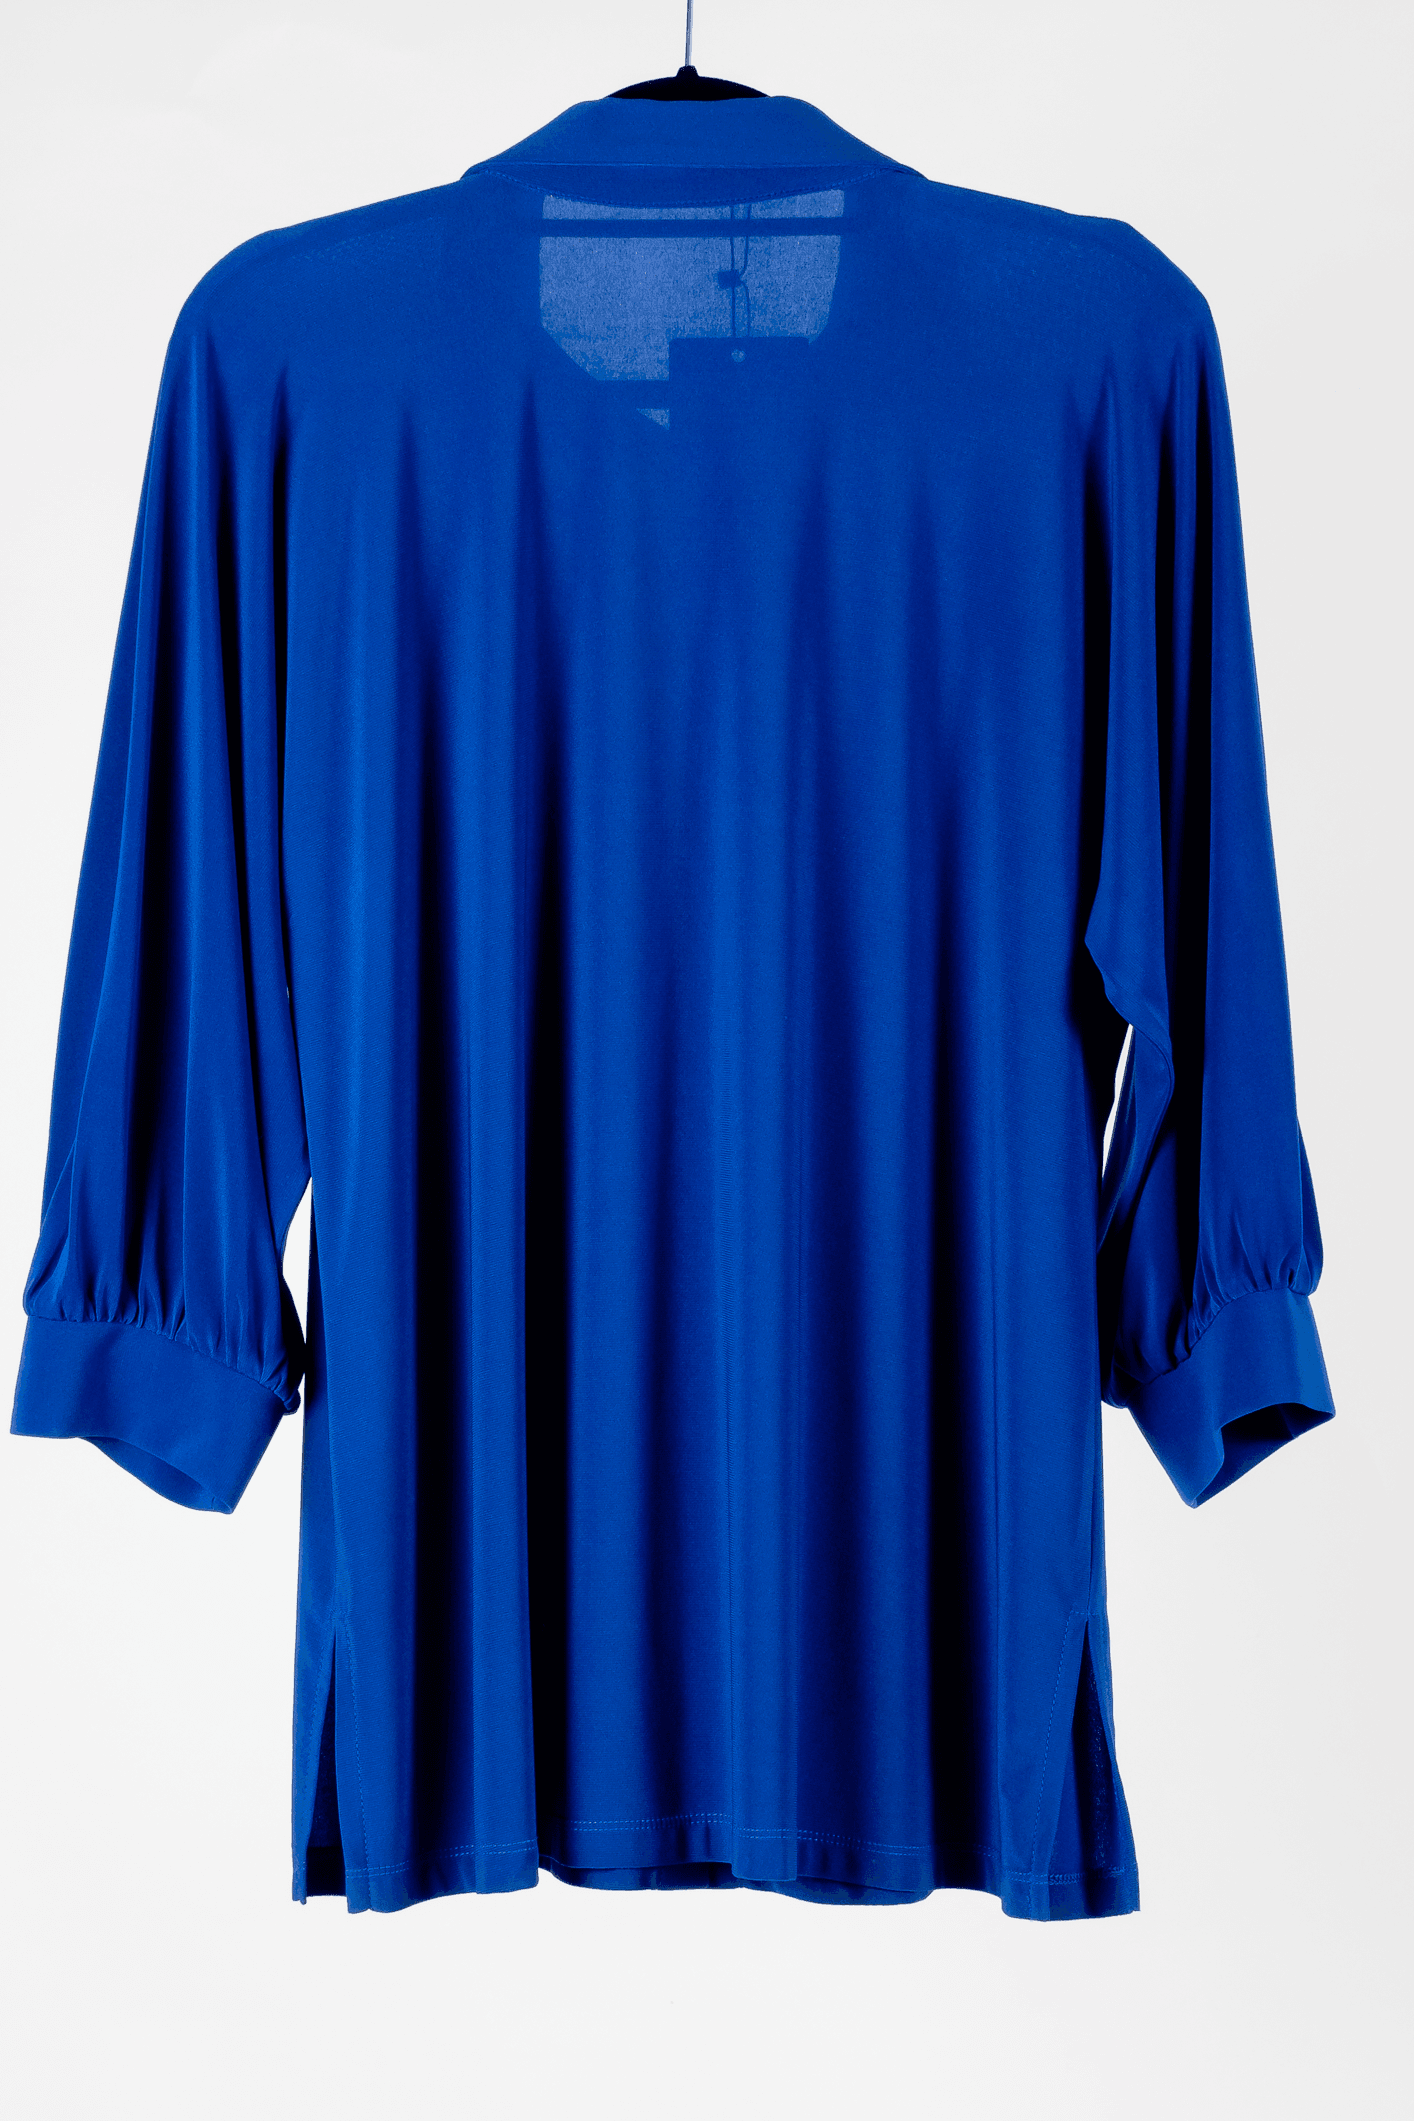 Camisa Irina - M / Azulão - BLUSAS MODELITE